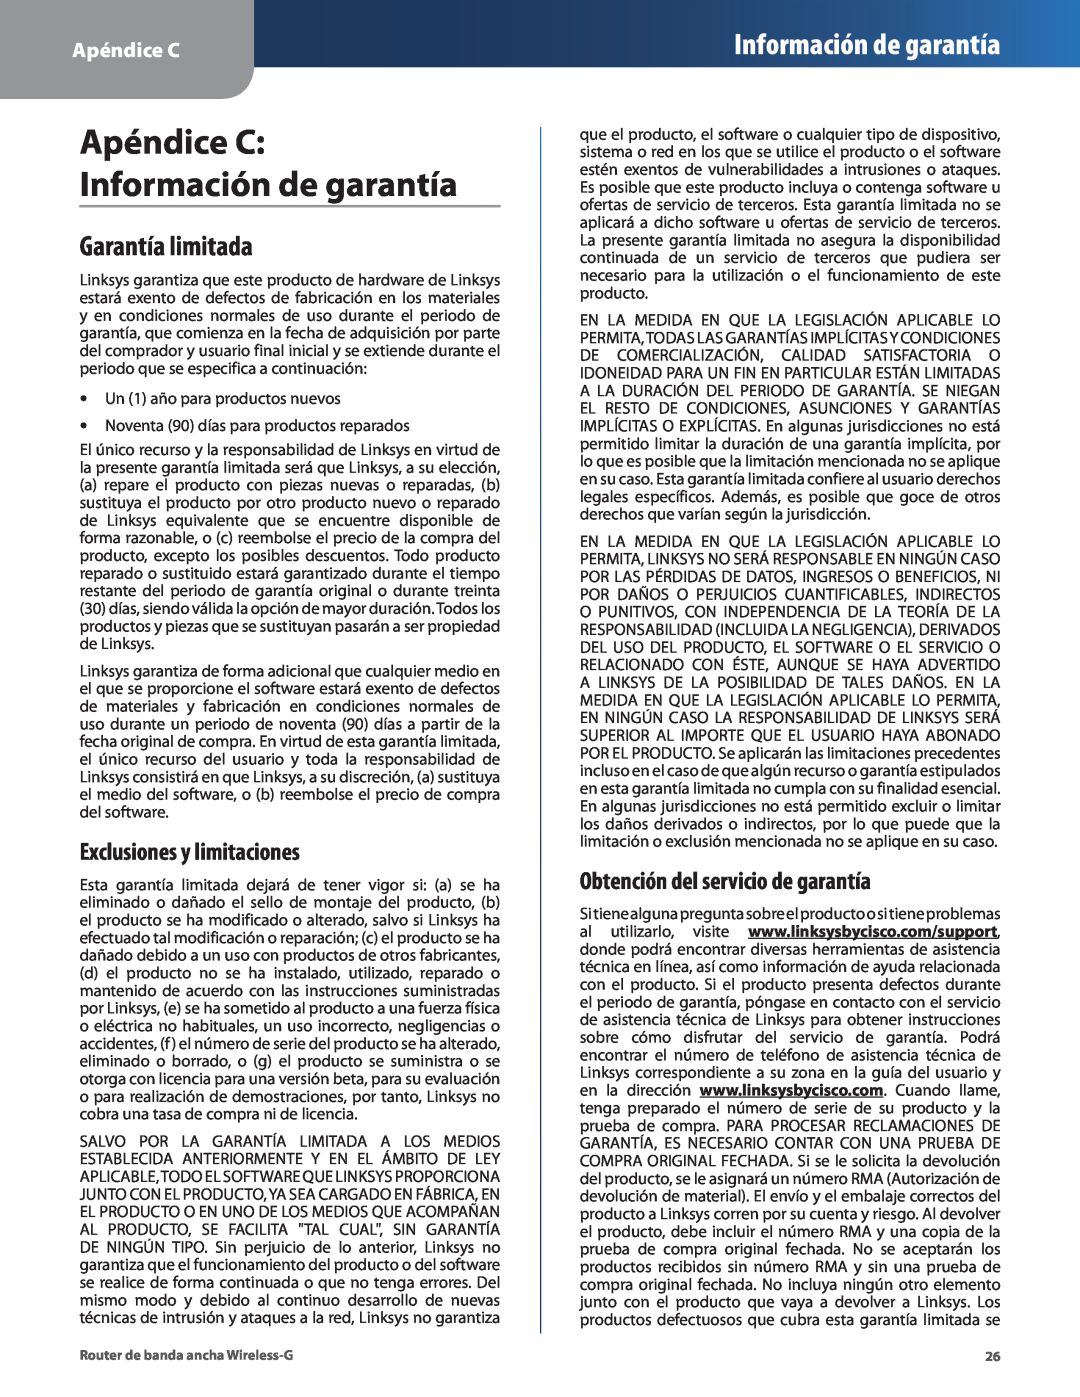 Cisco Systems WRT54G2 manual Apéndice C Información de garantía, Garantía limitada, Exclusiones y limitaciones 